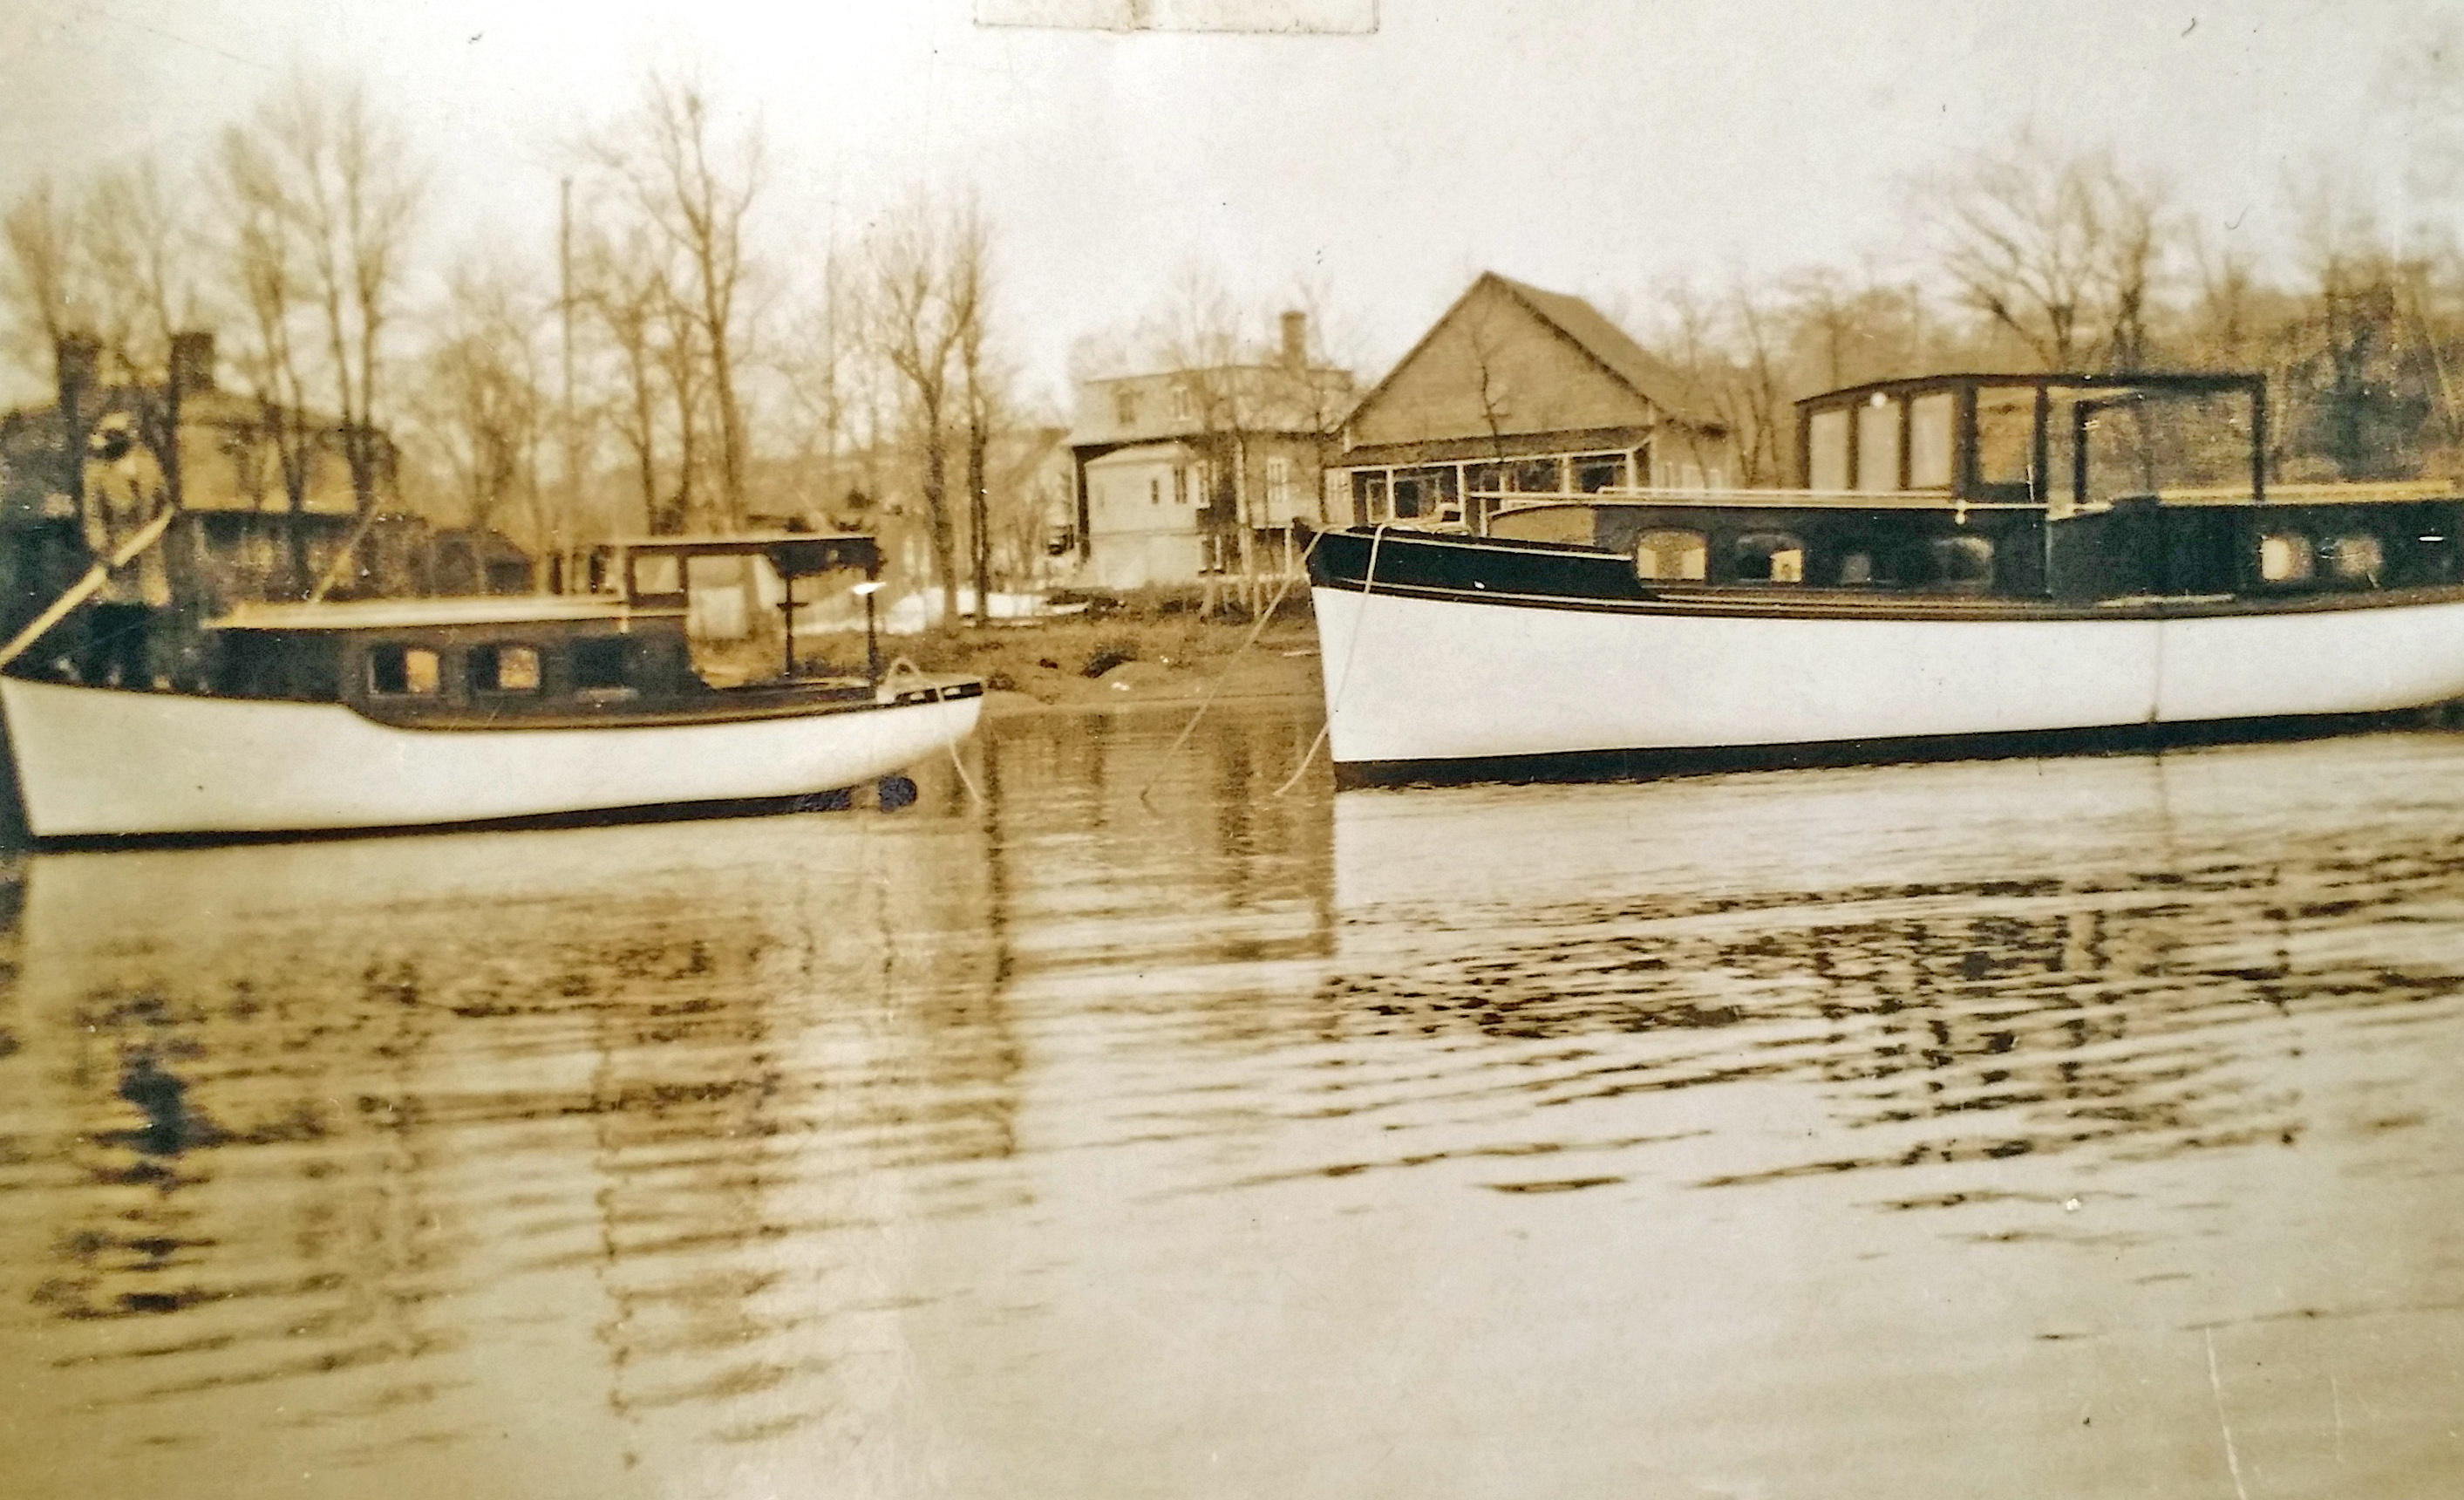 Photographie sépia de deux bateaux de bois, avec cabine, ancrés près de la rive. Des maisons et des arbres sans feuillage sont à l'arrière-plan.